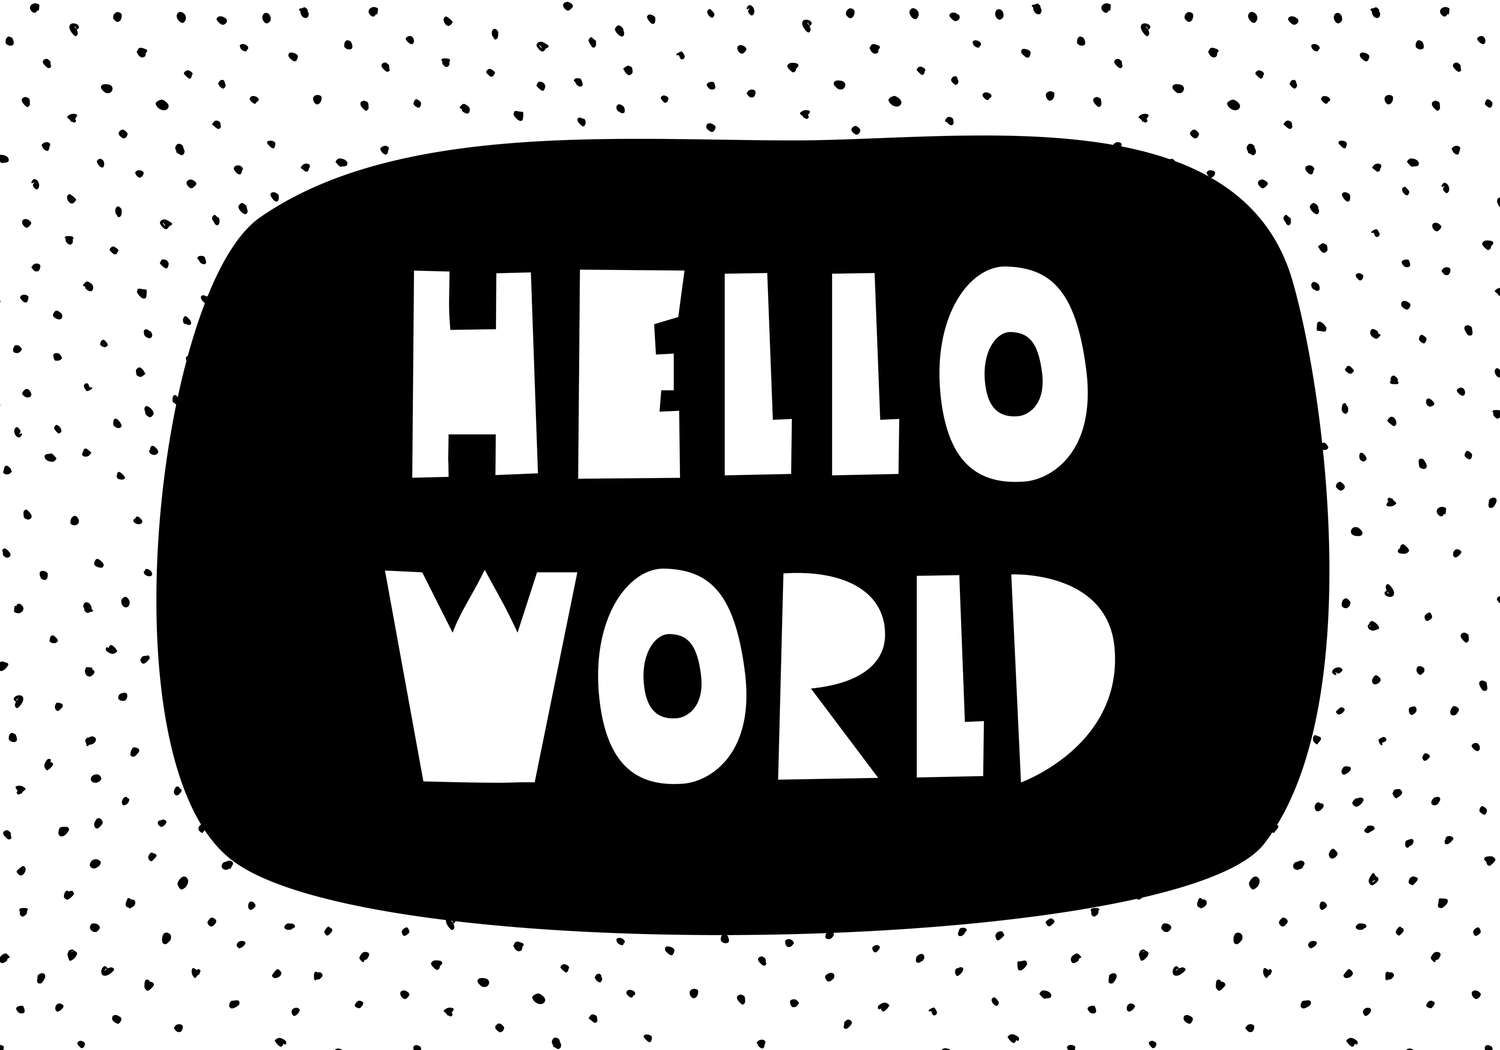             papiers peints à impression numérique pour chambre d'enfant avec inscription "Hello World" - intissé lisse & légèrement brillant
        